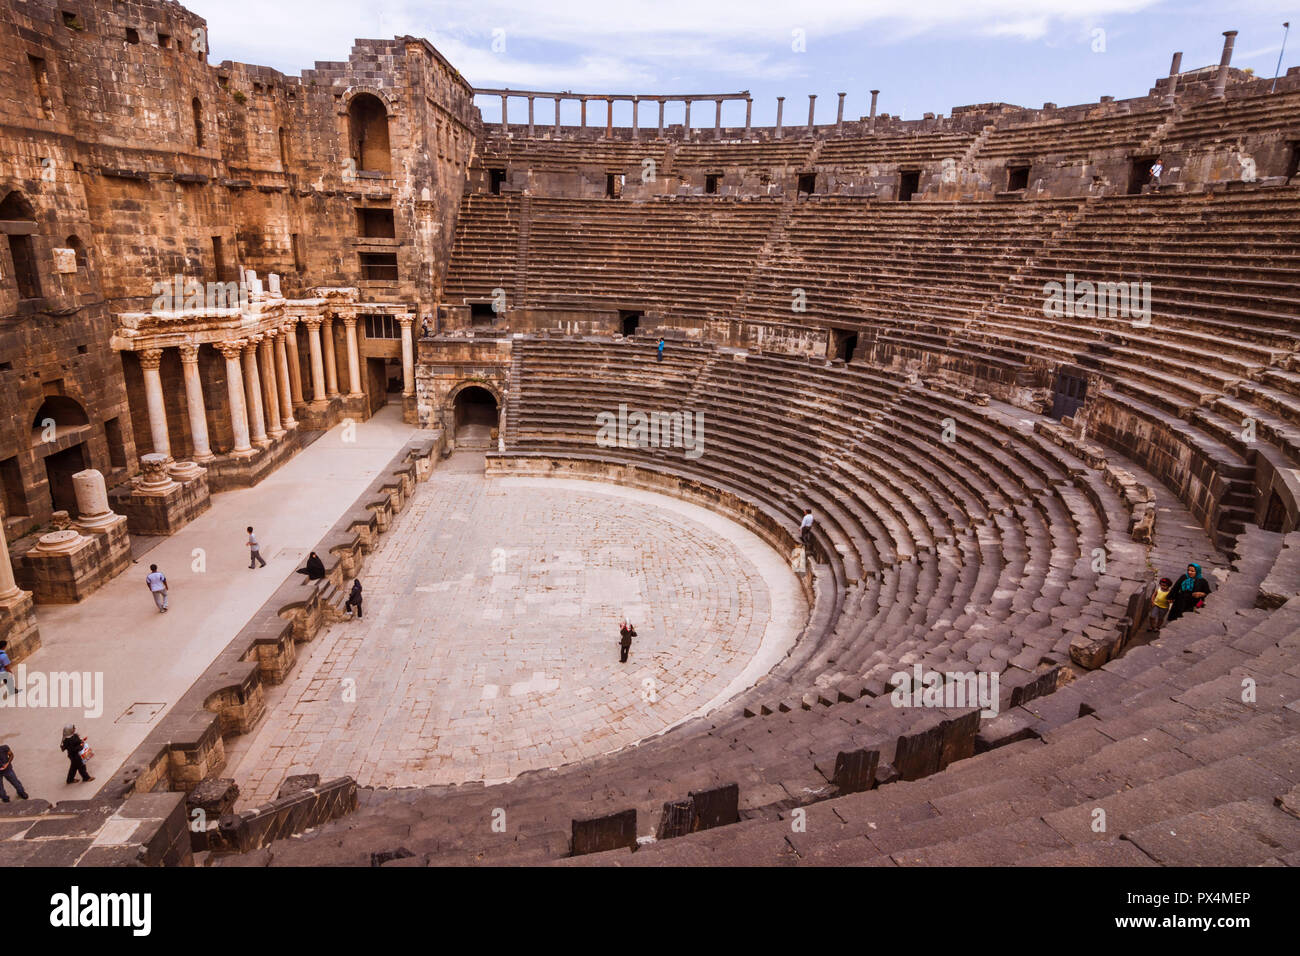 Bosra, Siria : visitatori presso le rovine del II secolo D.C. Teatro romano di Bosra in seguito completamente racchiuso da un Ayyūbid fortezza medievale. Con il sedile di guida Foto Stock